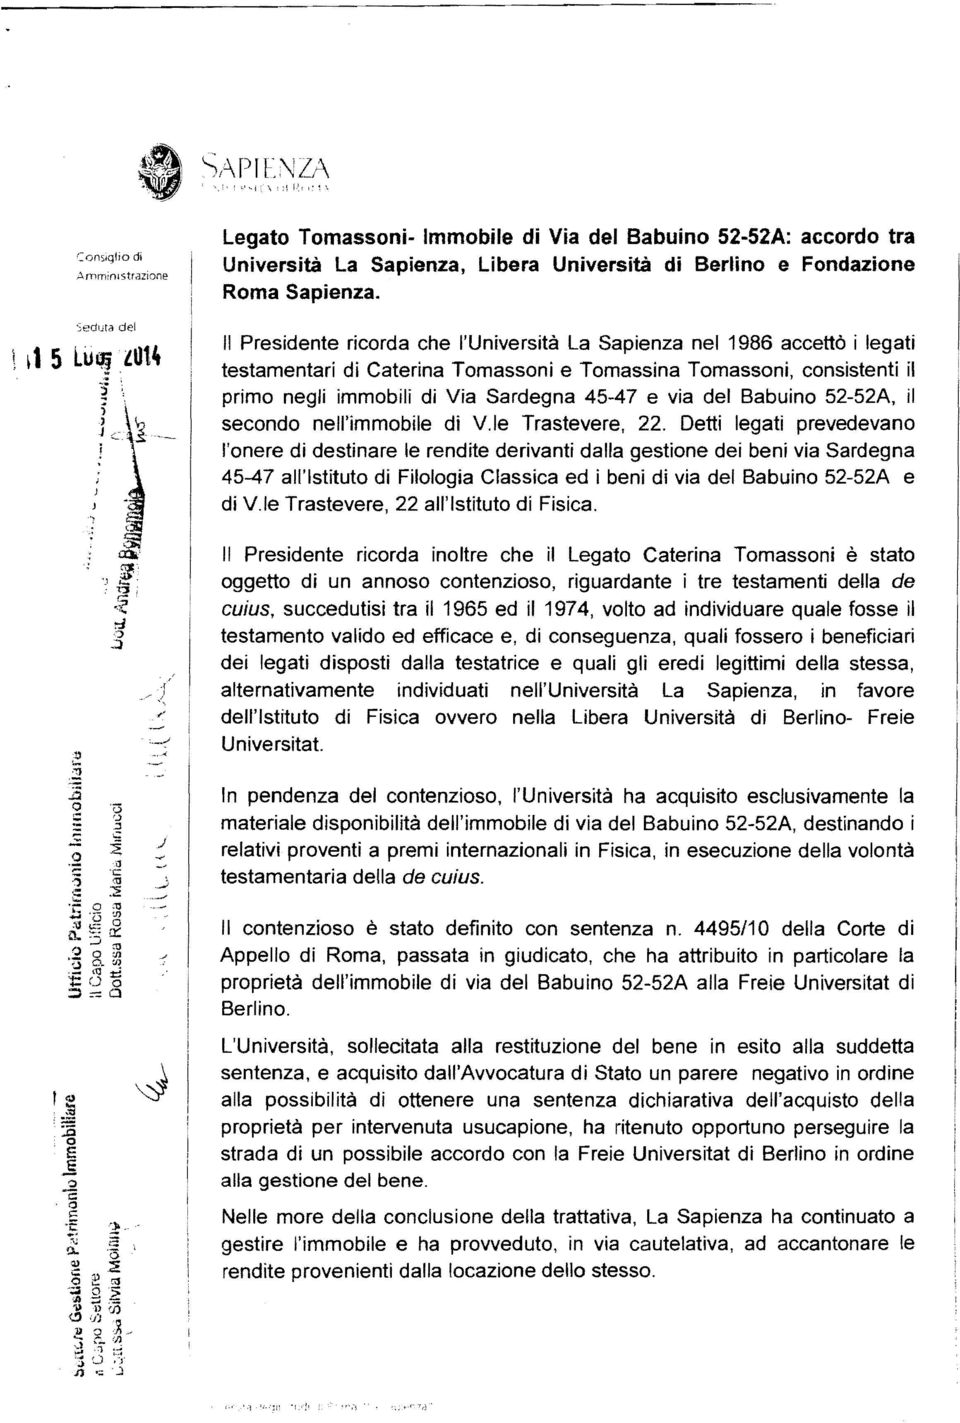 Il Presidente ricorda che l'università La Sapienza nel 1986 accettò i legati testamentari di Caterina Tomassoni e Tomassina Tomassoni, consistenti il primo negli immobili di Via Sardegna 45-47 e via